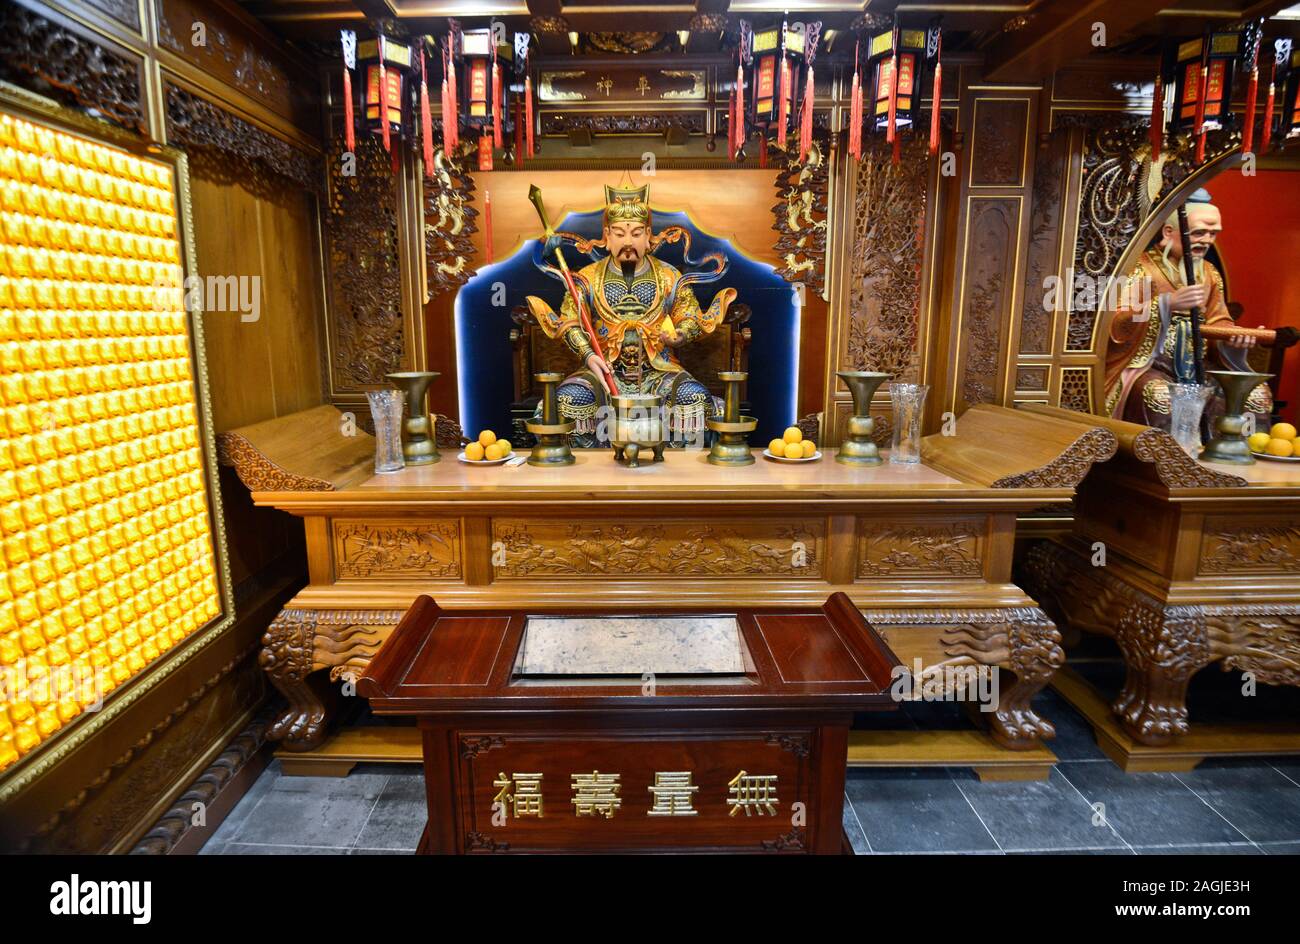 Altar der Stadt Gottes Tempel von Shanghai (China) Stockfoto